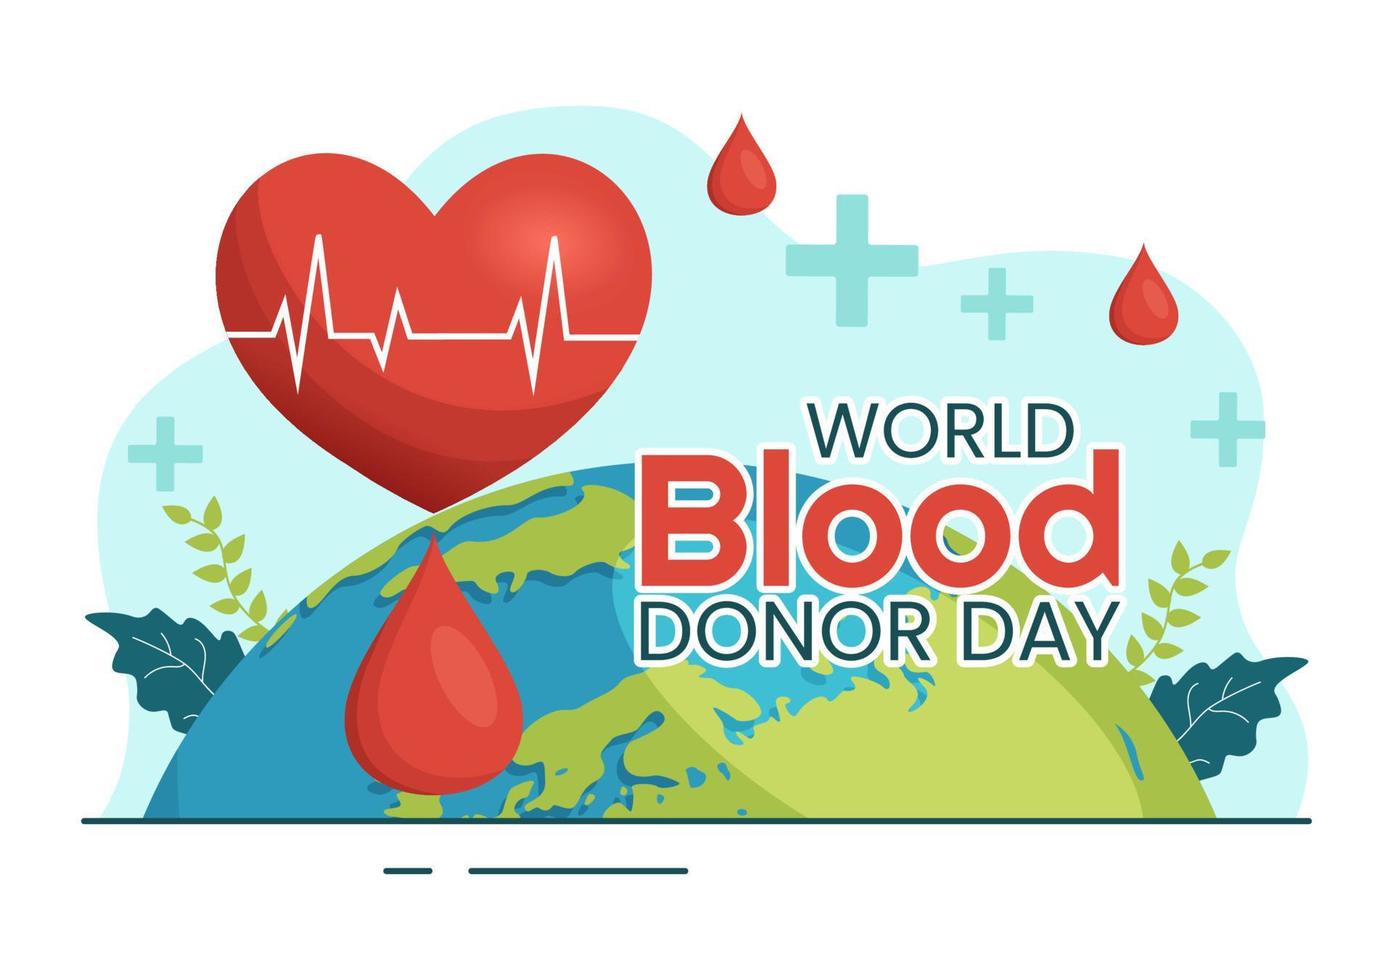 mundo sangre donante día en junio 14 ilustración con humano donado sangres para dar el recipiente en salvar vida plano dibujos animados mano dibujado plantillas vector